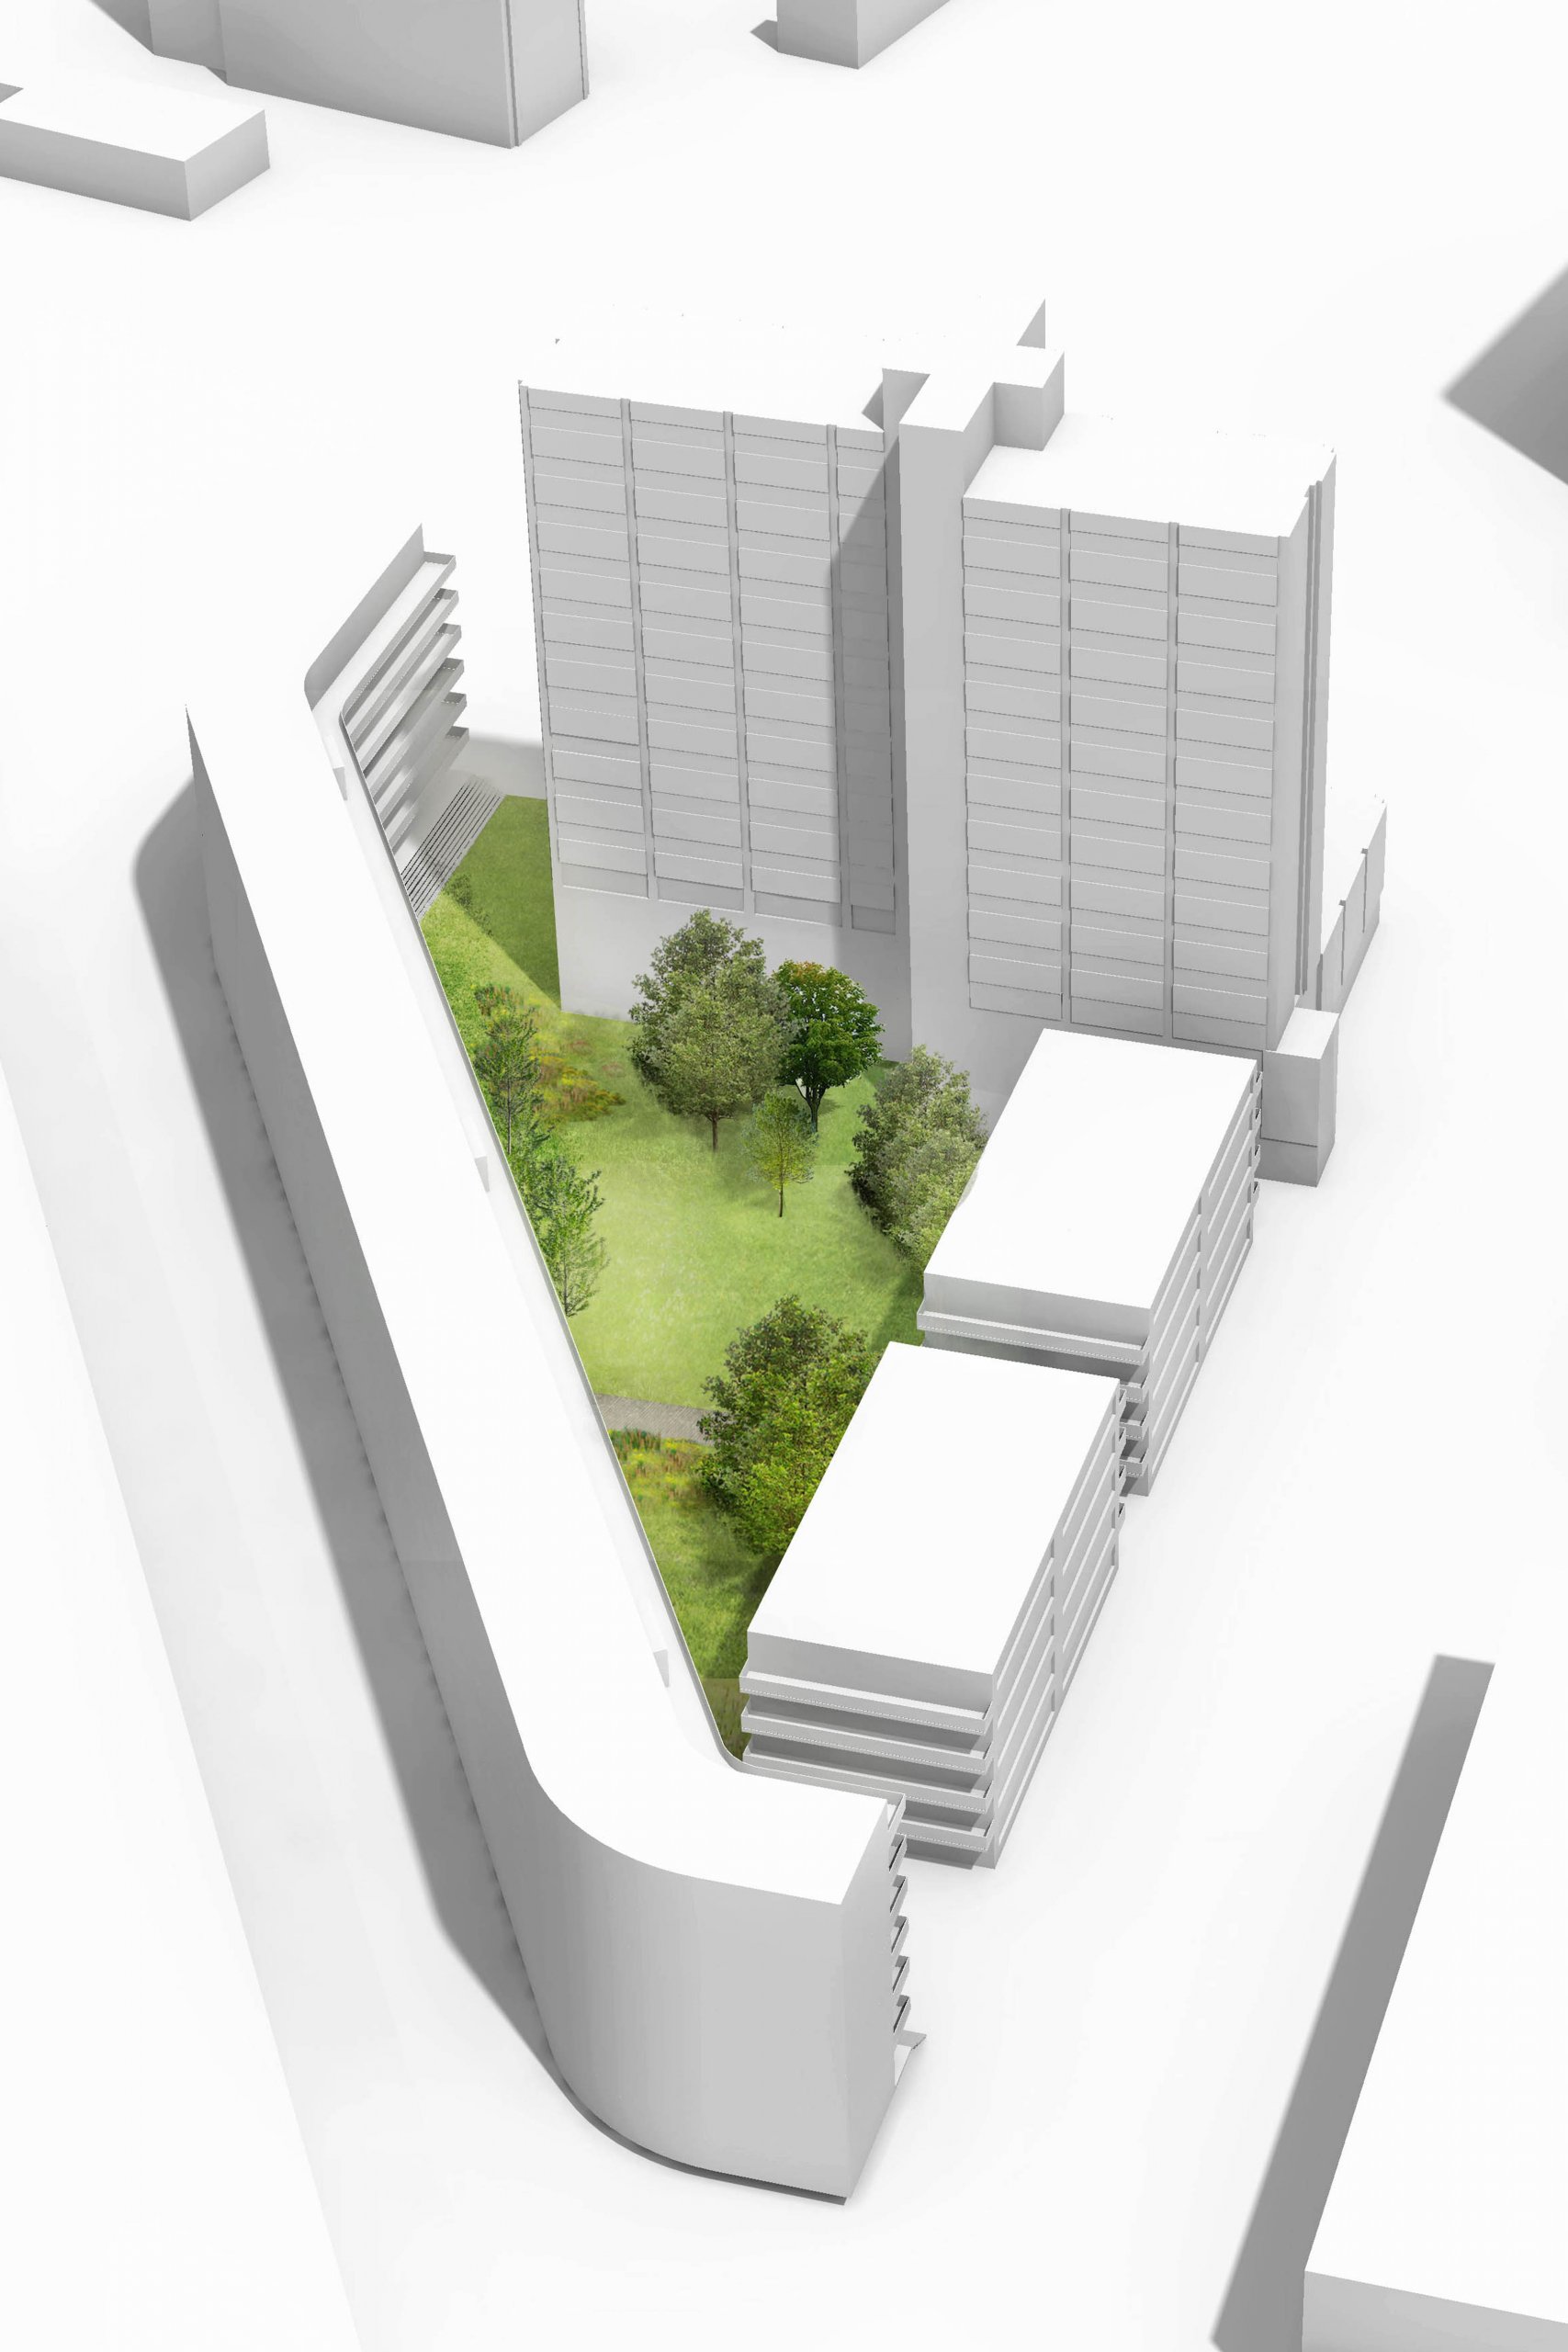 3D model van massastudie campus met groen binnenterrein